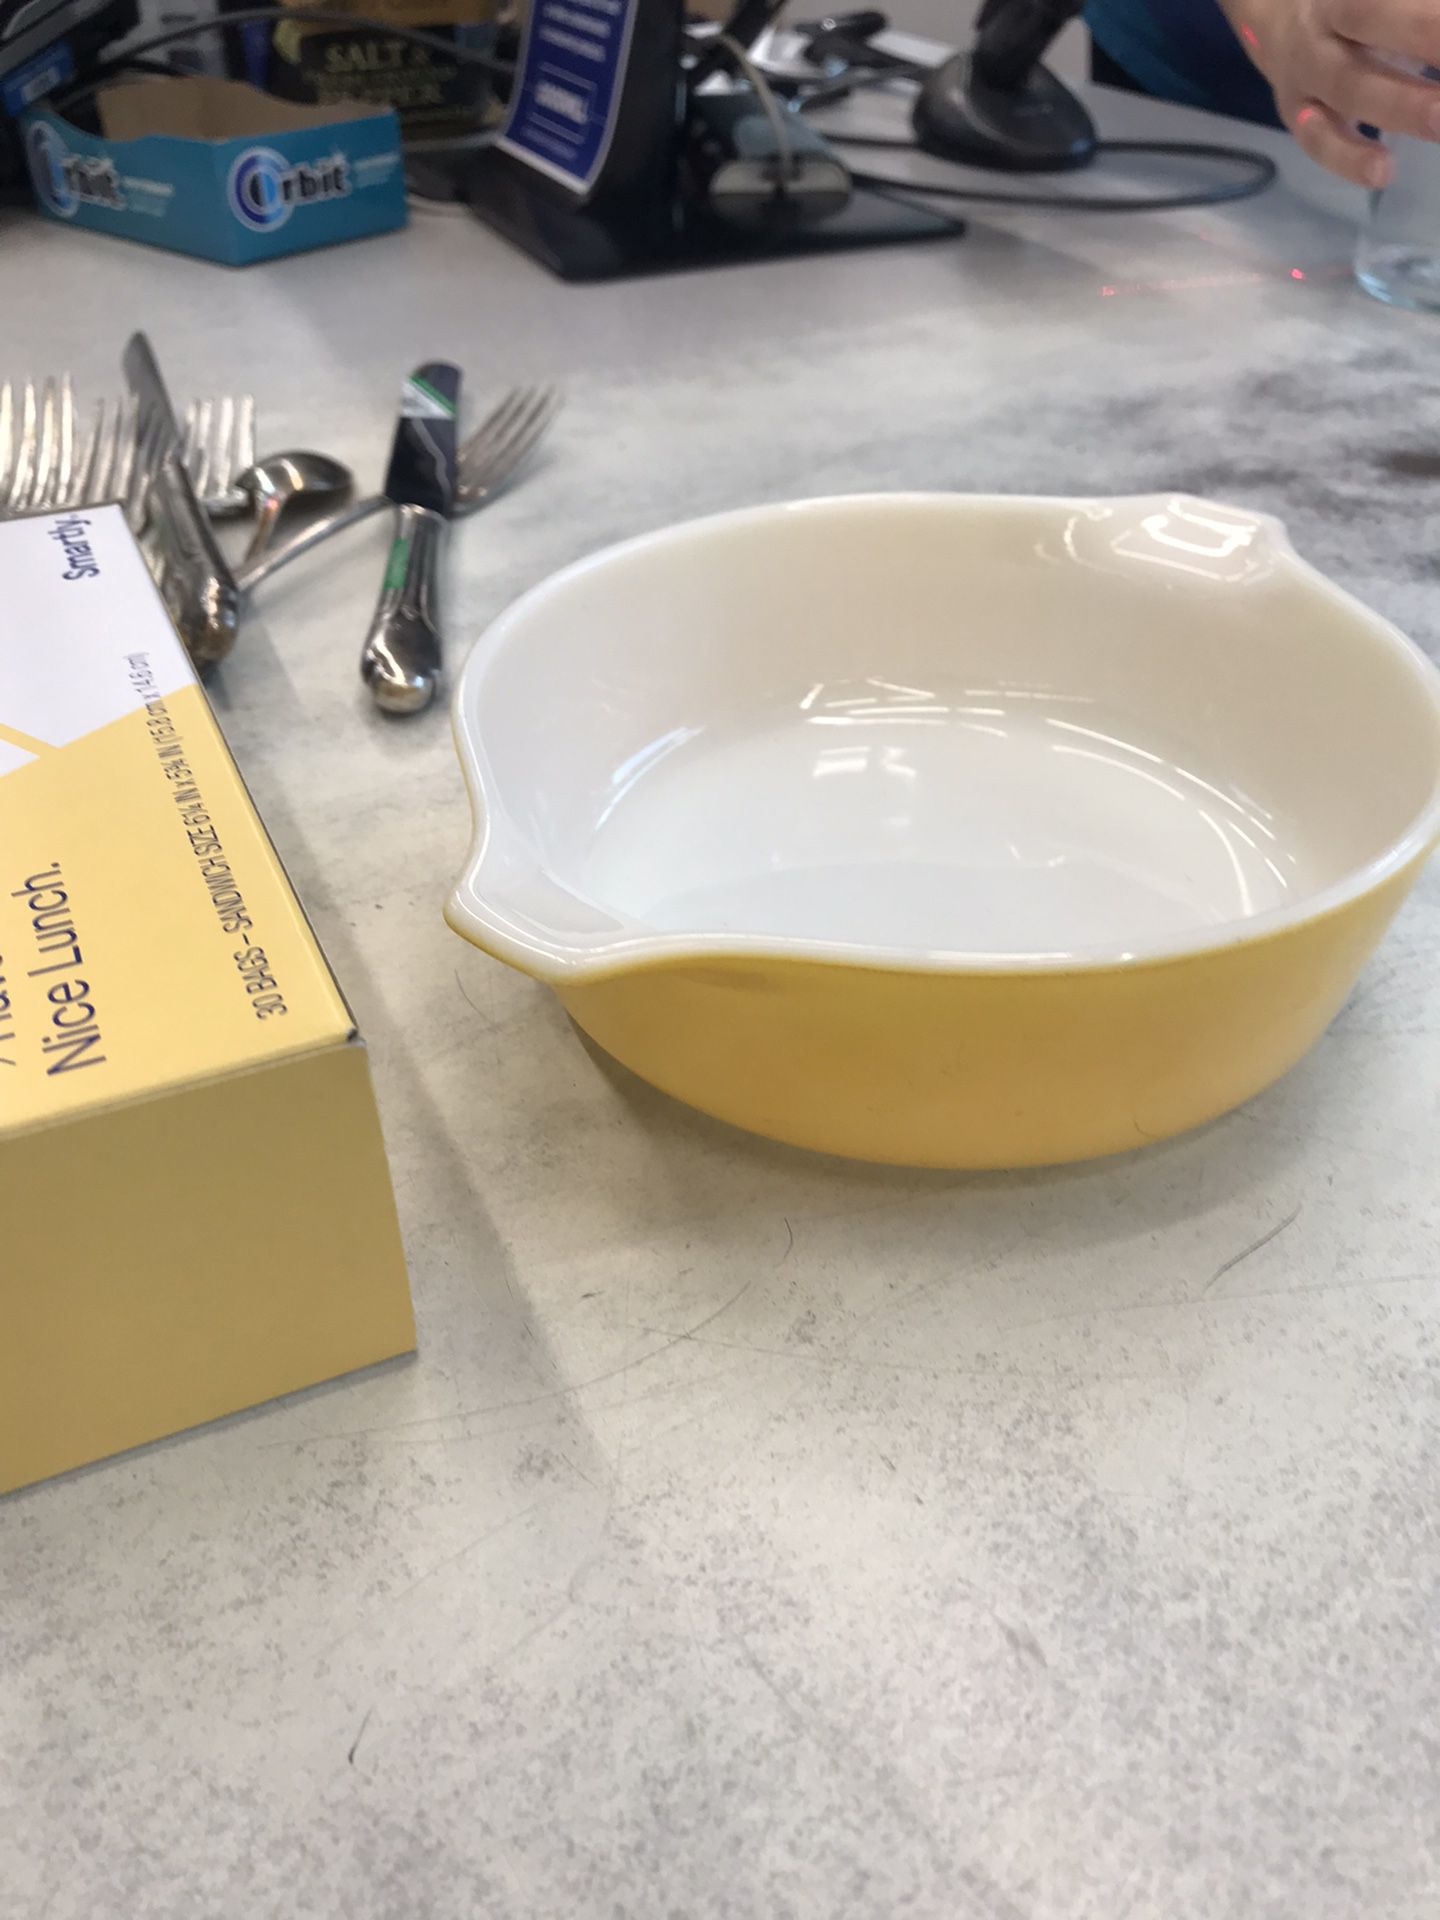 Lemon yellow Pyrex dish